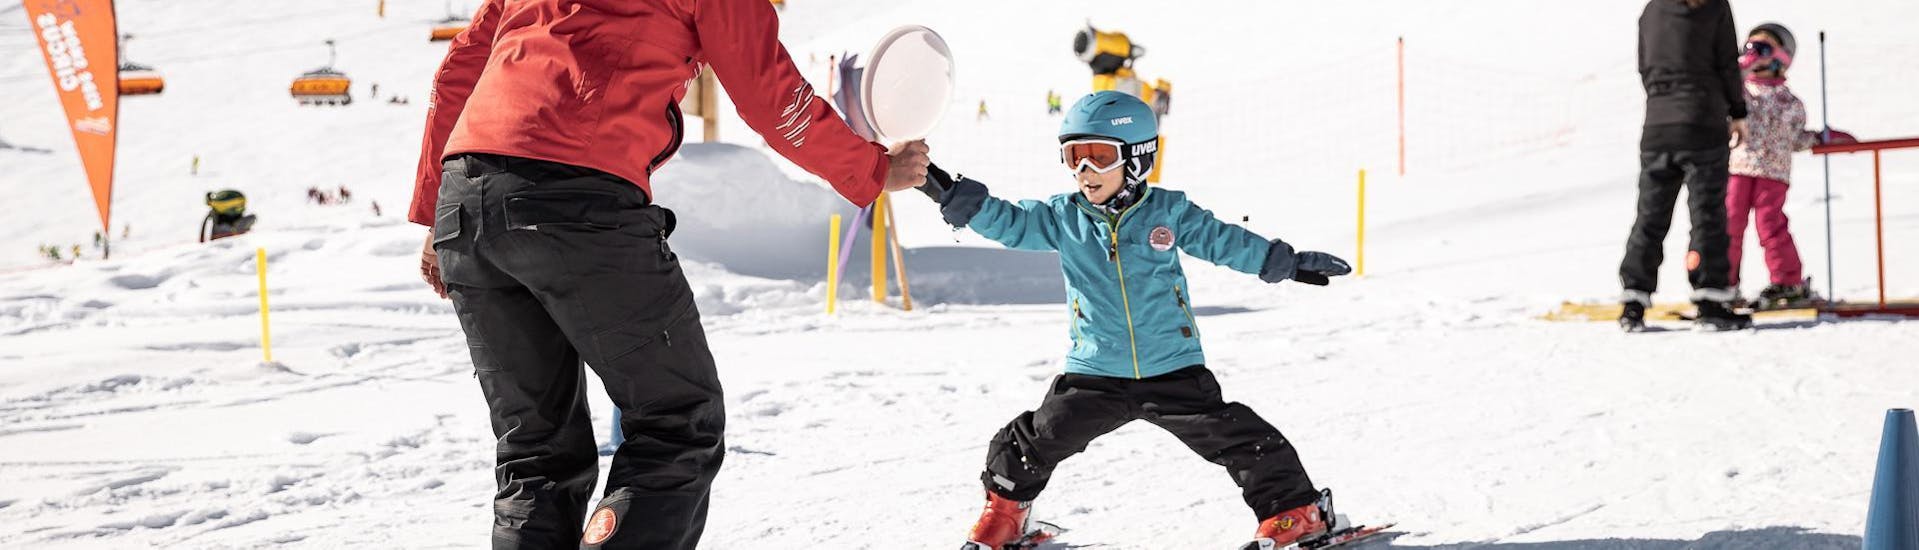 Un jeune enfant fait ses premiers pas sur des skis pendant les cours de ski pour enfants (3-4 ans) - premiers pas avec un moniteur expérimenté de l'école de ski et de snowboard de Vacancia.